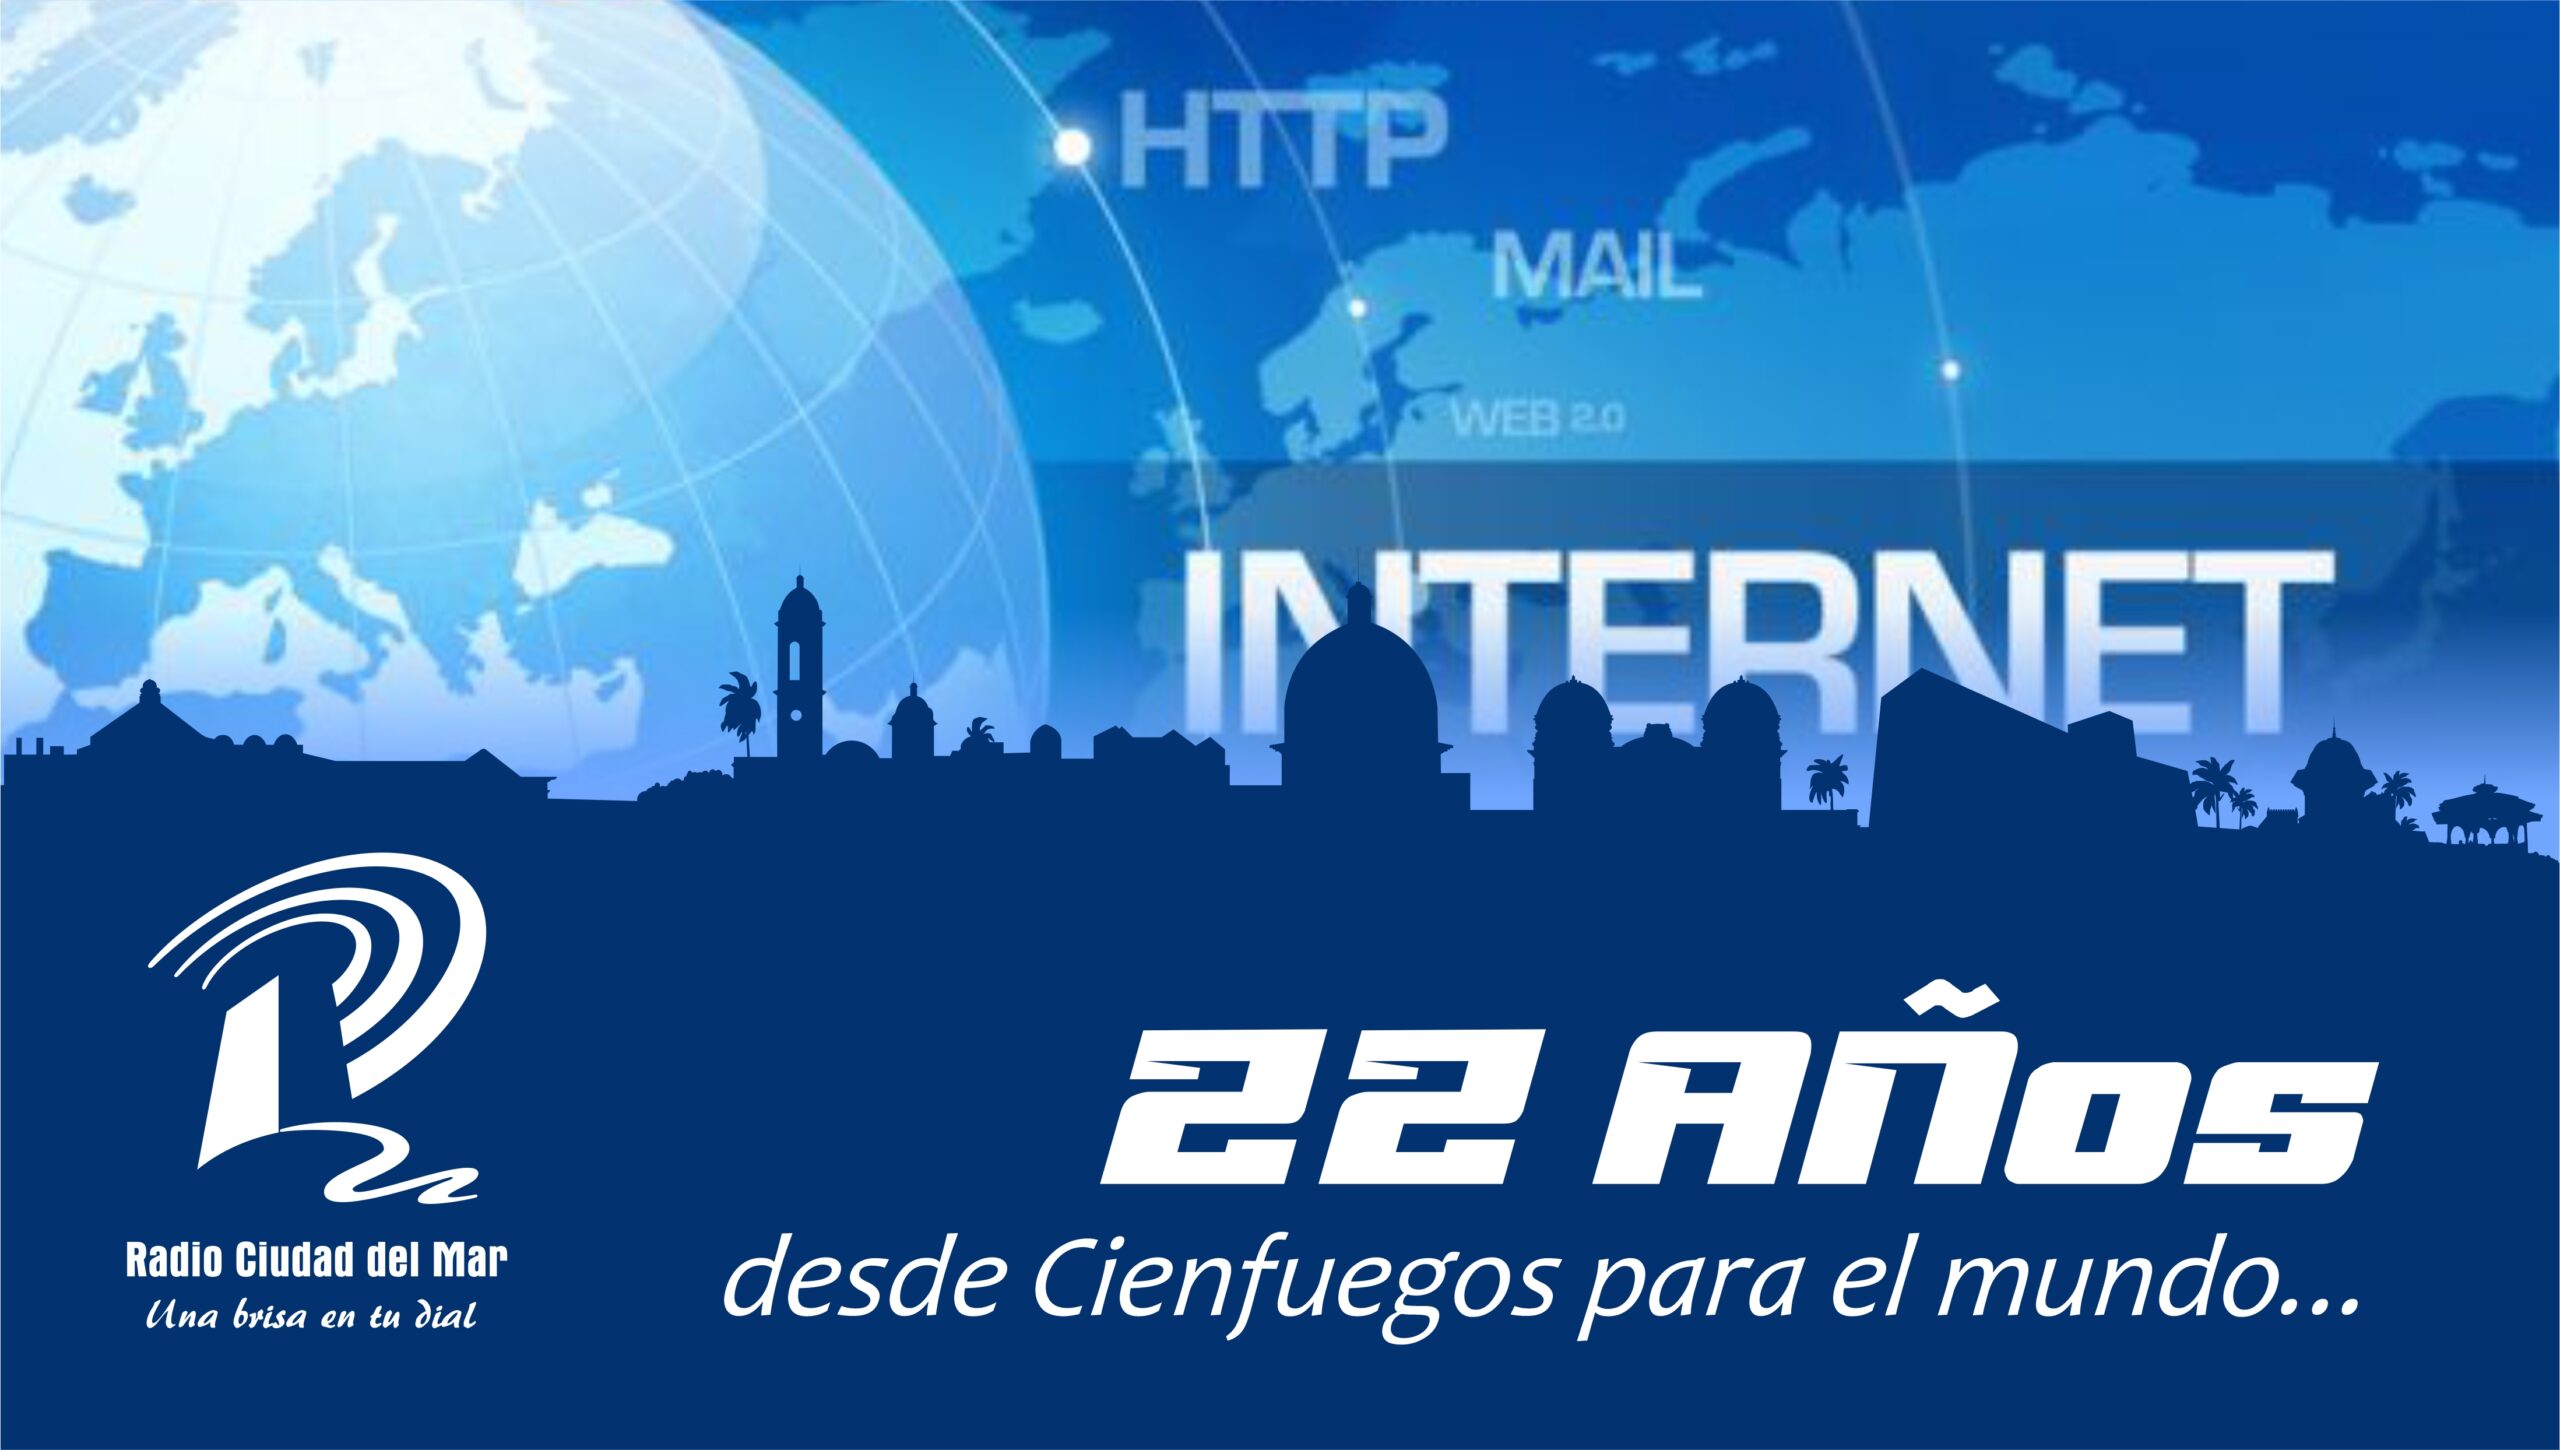 22 Años de Radio Ciudad del Mar en Internet. 